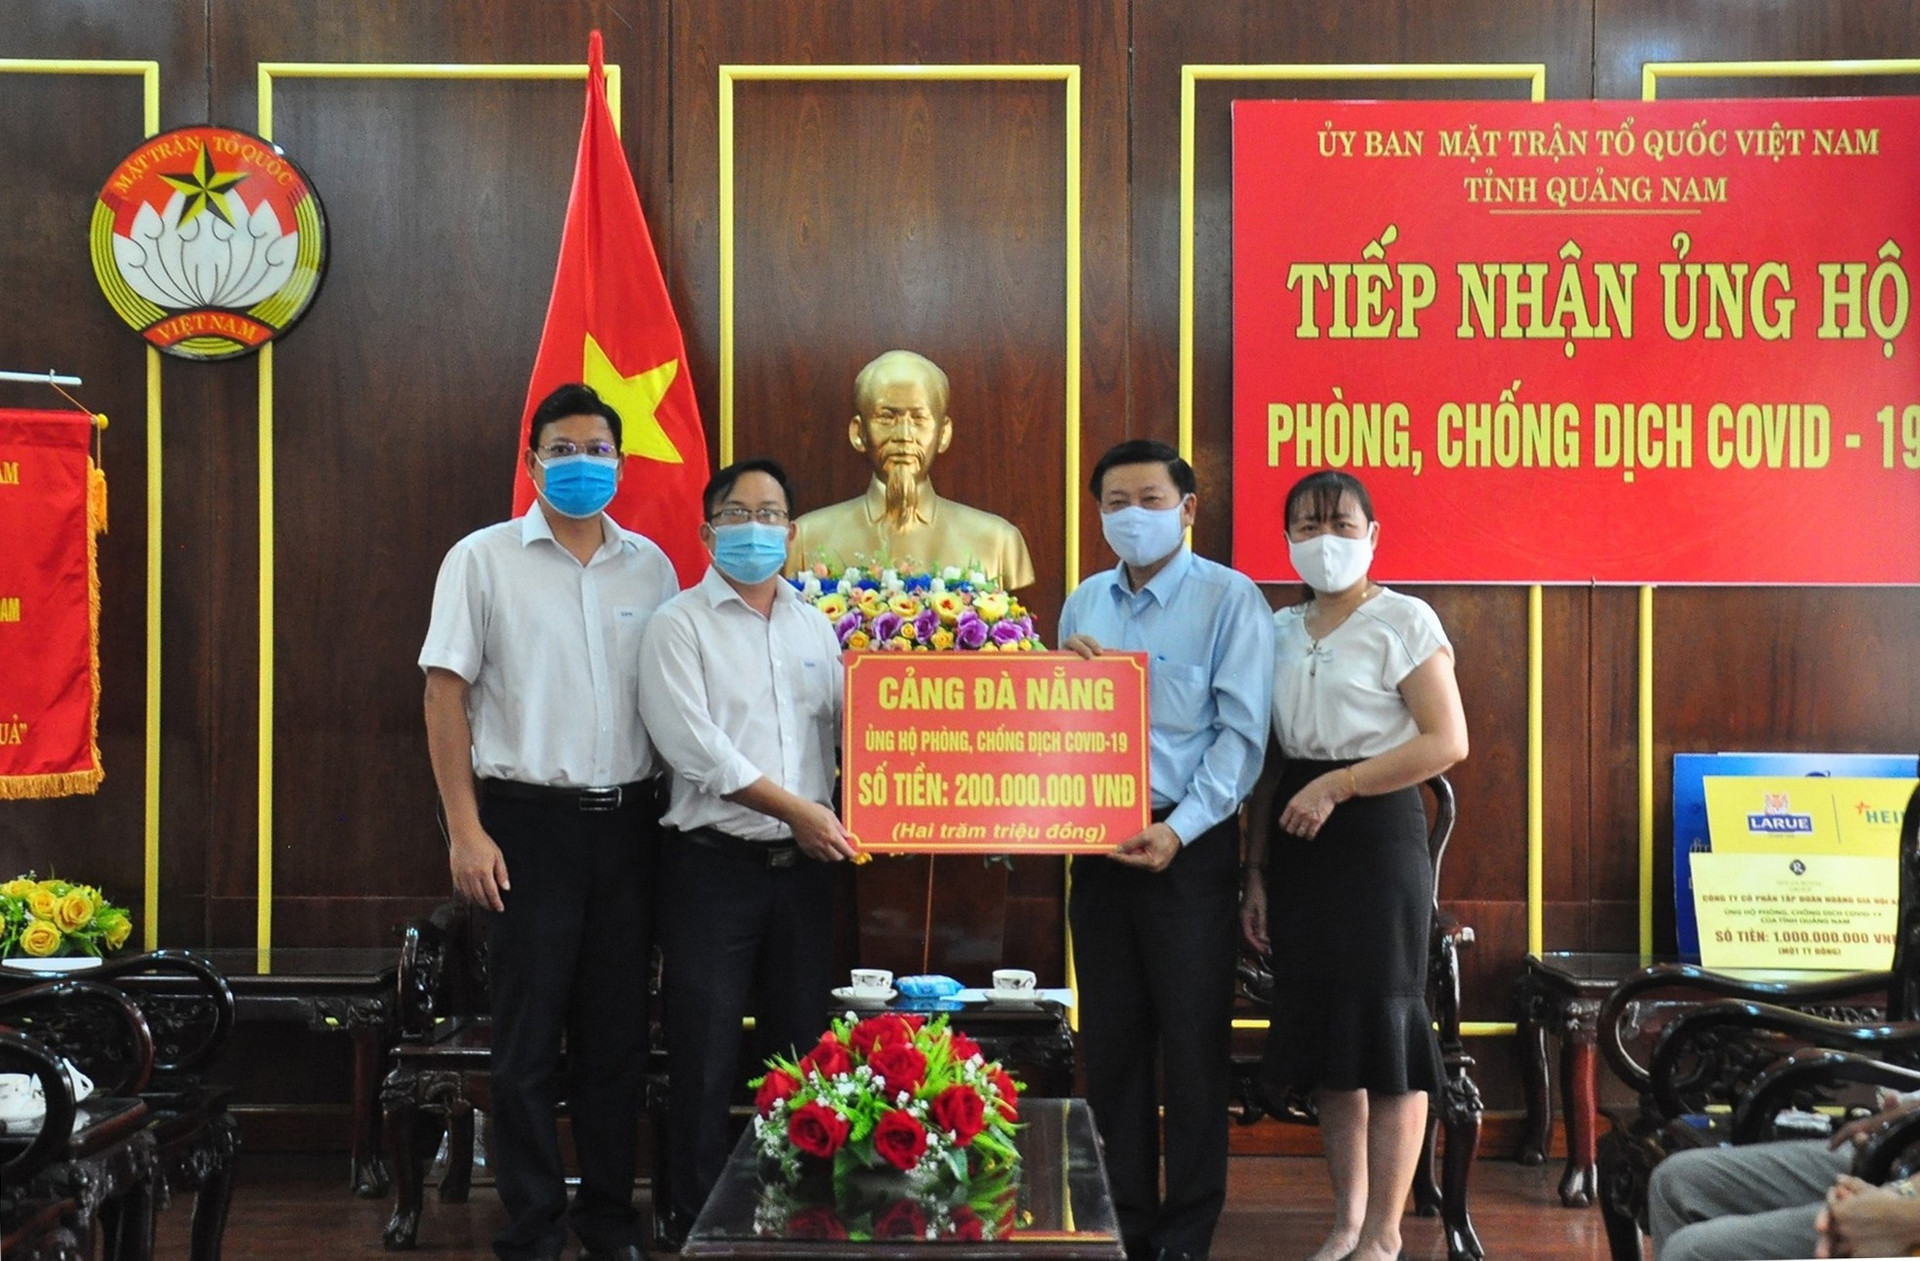 Cảng Đà Nẵng ủng hộ 200 triệu đồng cho Quảng Nam phòng chống dịch Covid-19. Ảnh: VINH ANH